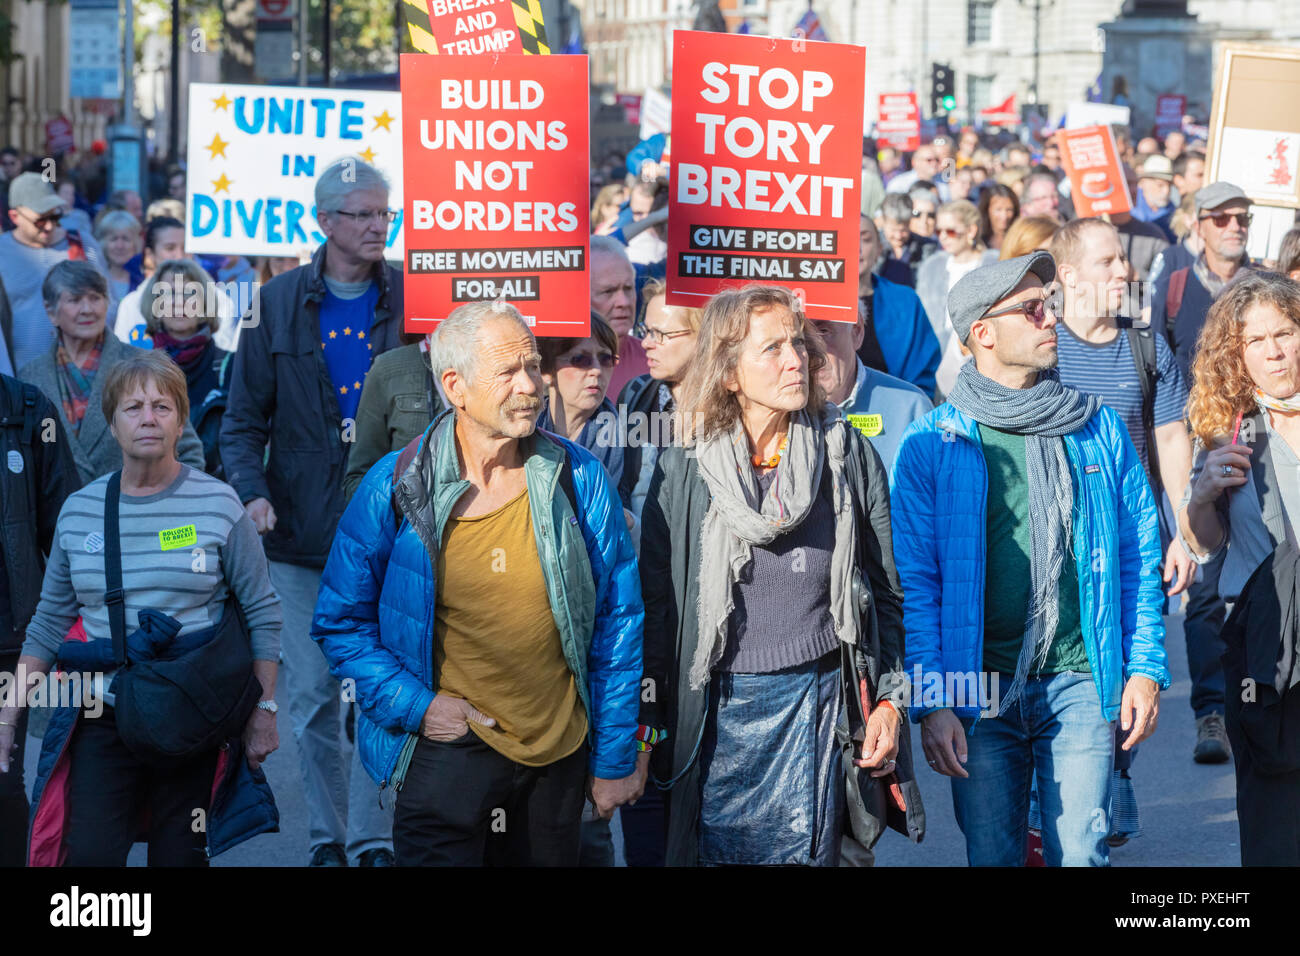 Whitehall, Londra, Inghilterra; xx ottobre 2018; uomo e donna tenere mani come essi marzo per chiedere una votazione dei popoli su Brexit Foto Stock